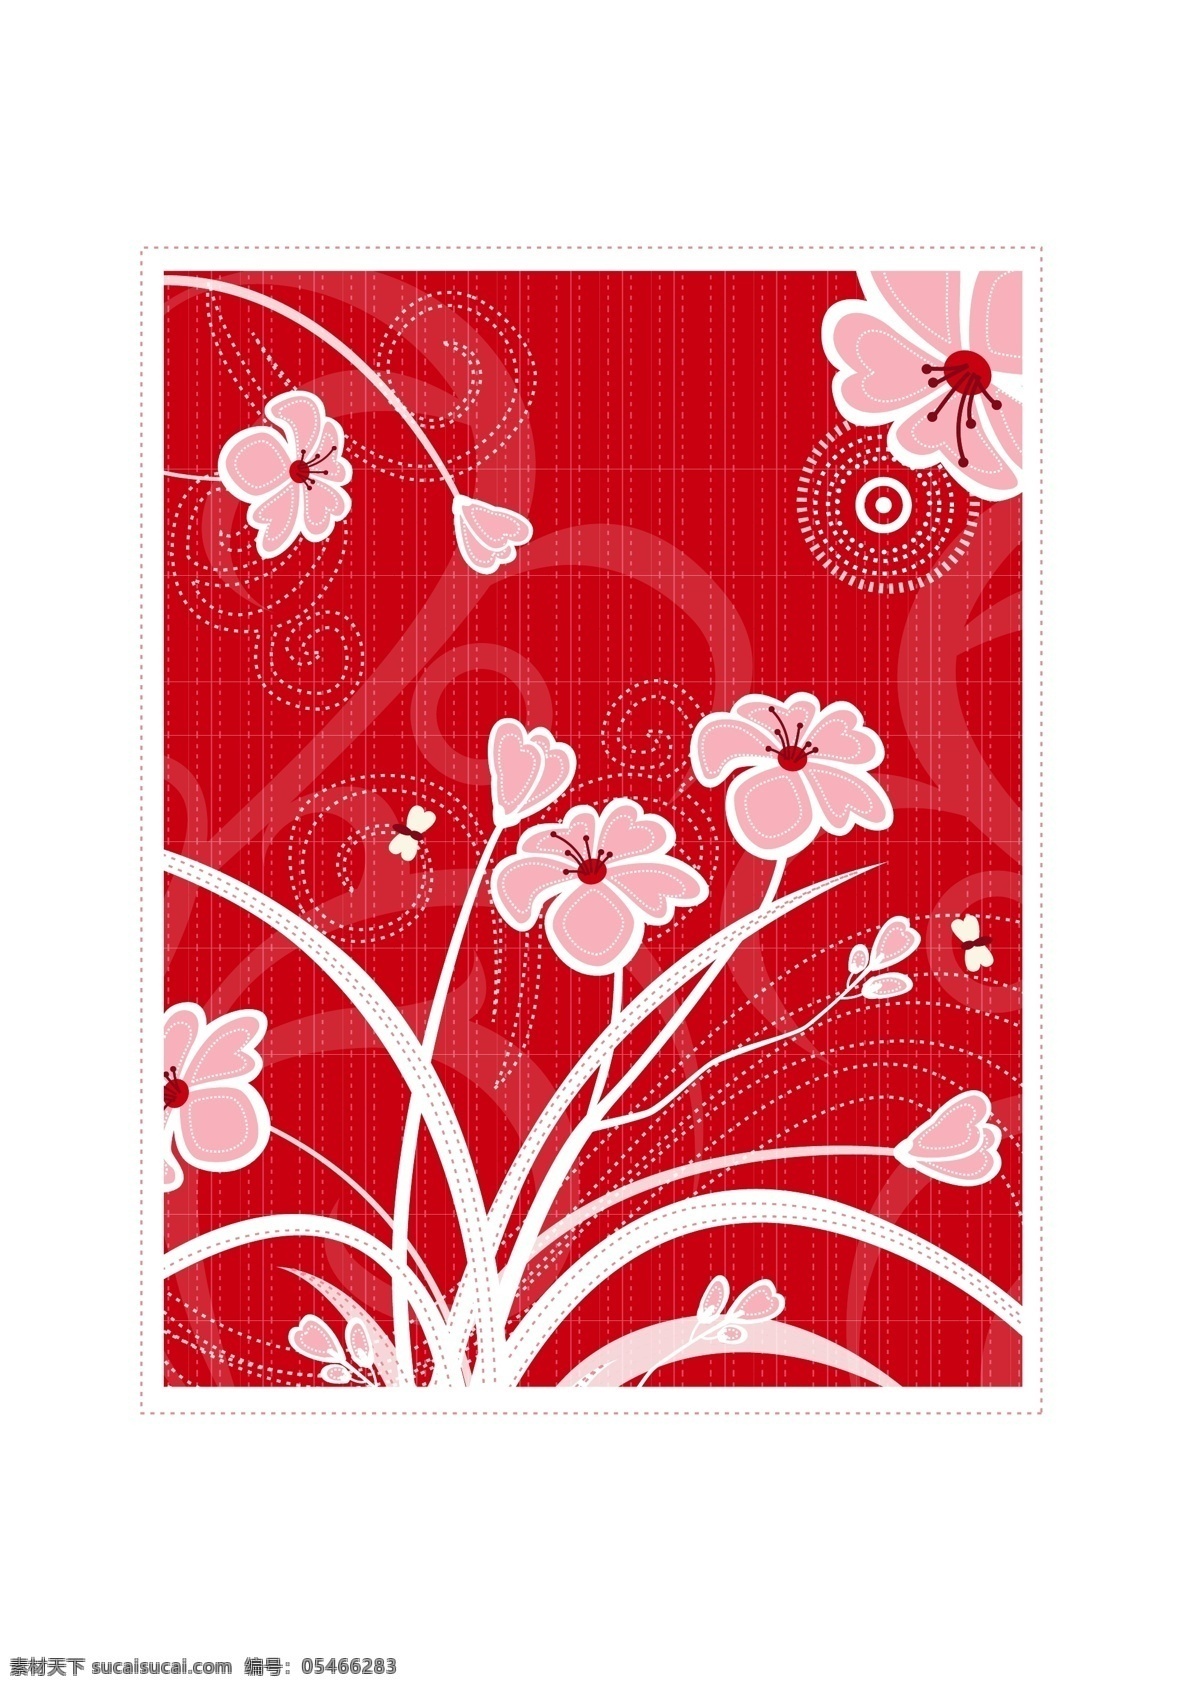 手绘 粉色 兰花 矢量 装饰 图案 花纹 简约 层次分明 矢量素材 装饰图案